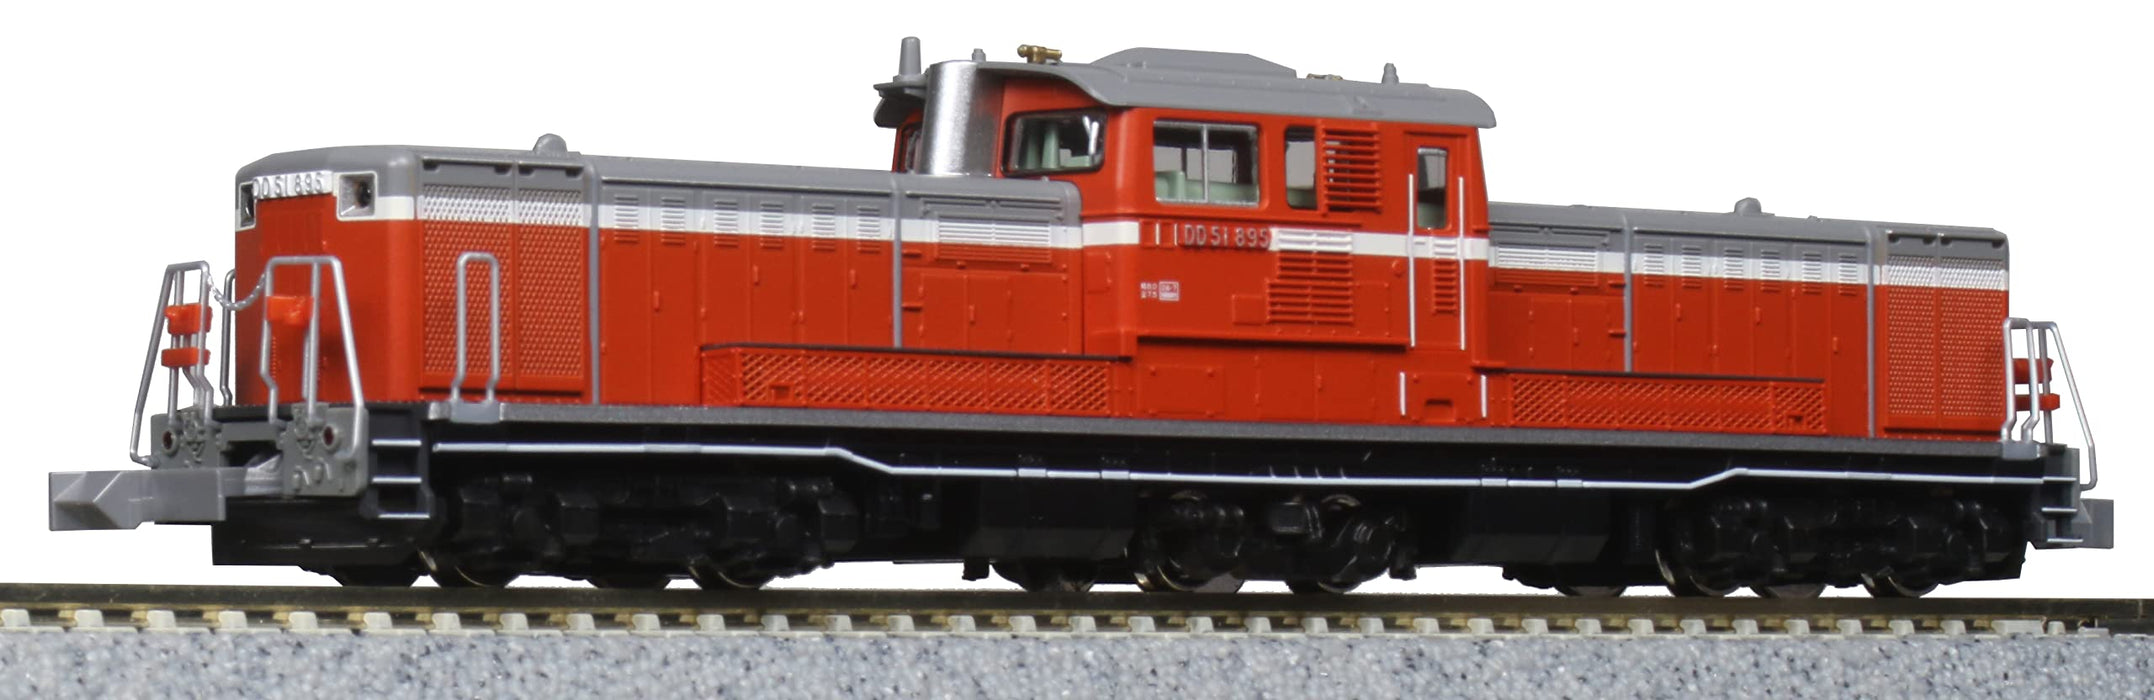 Kato Red Railway Diesel Locomotive N Gauge DD51 800 Series Takasaki Model 7008-G